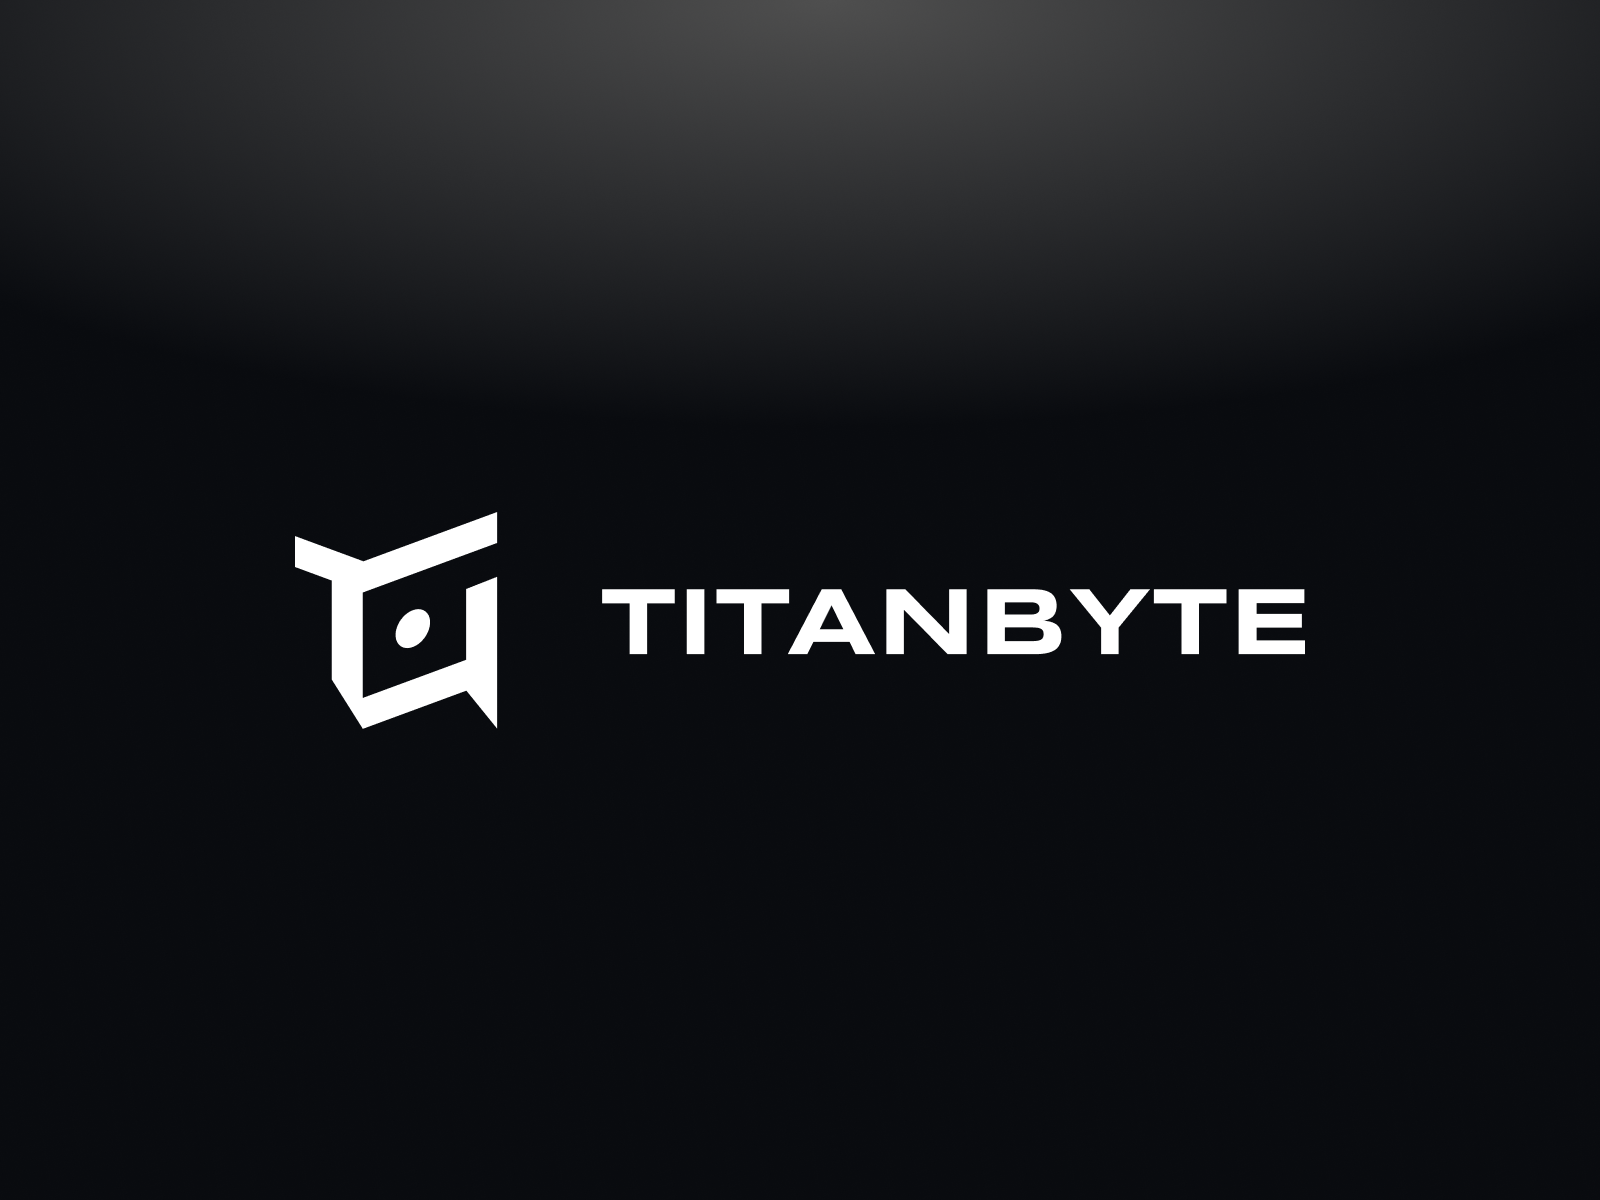 TitanByte